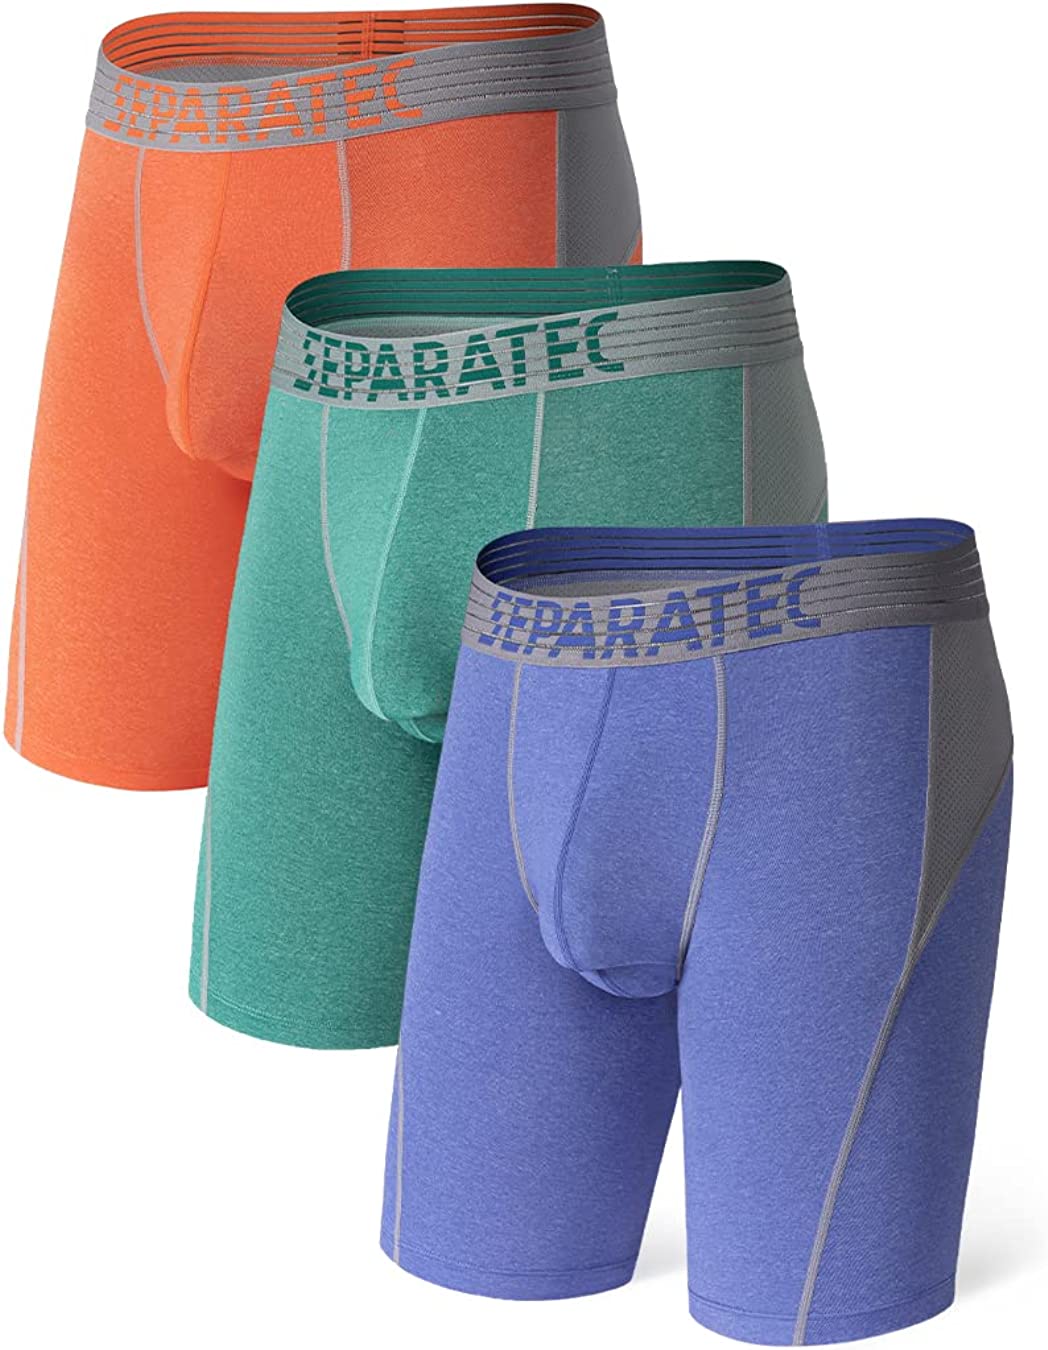 Separatec Quick Dry Underwear, Dual Pouch Underwear